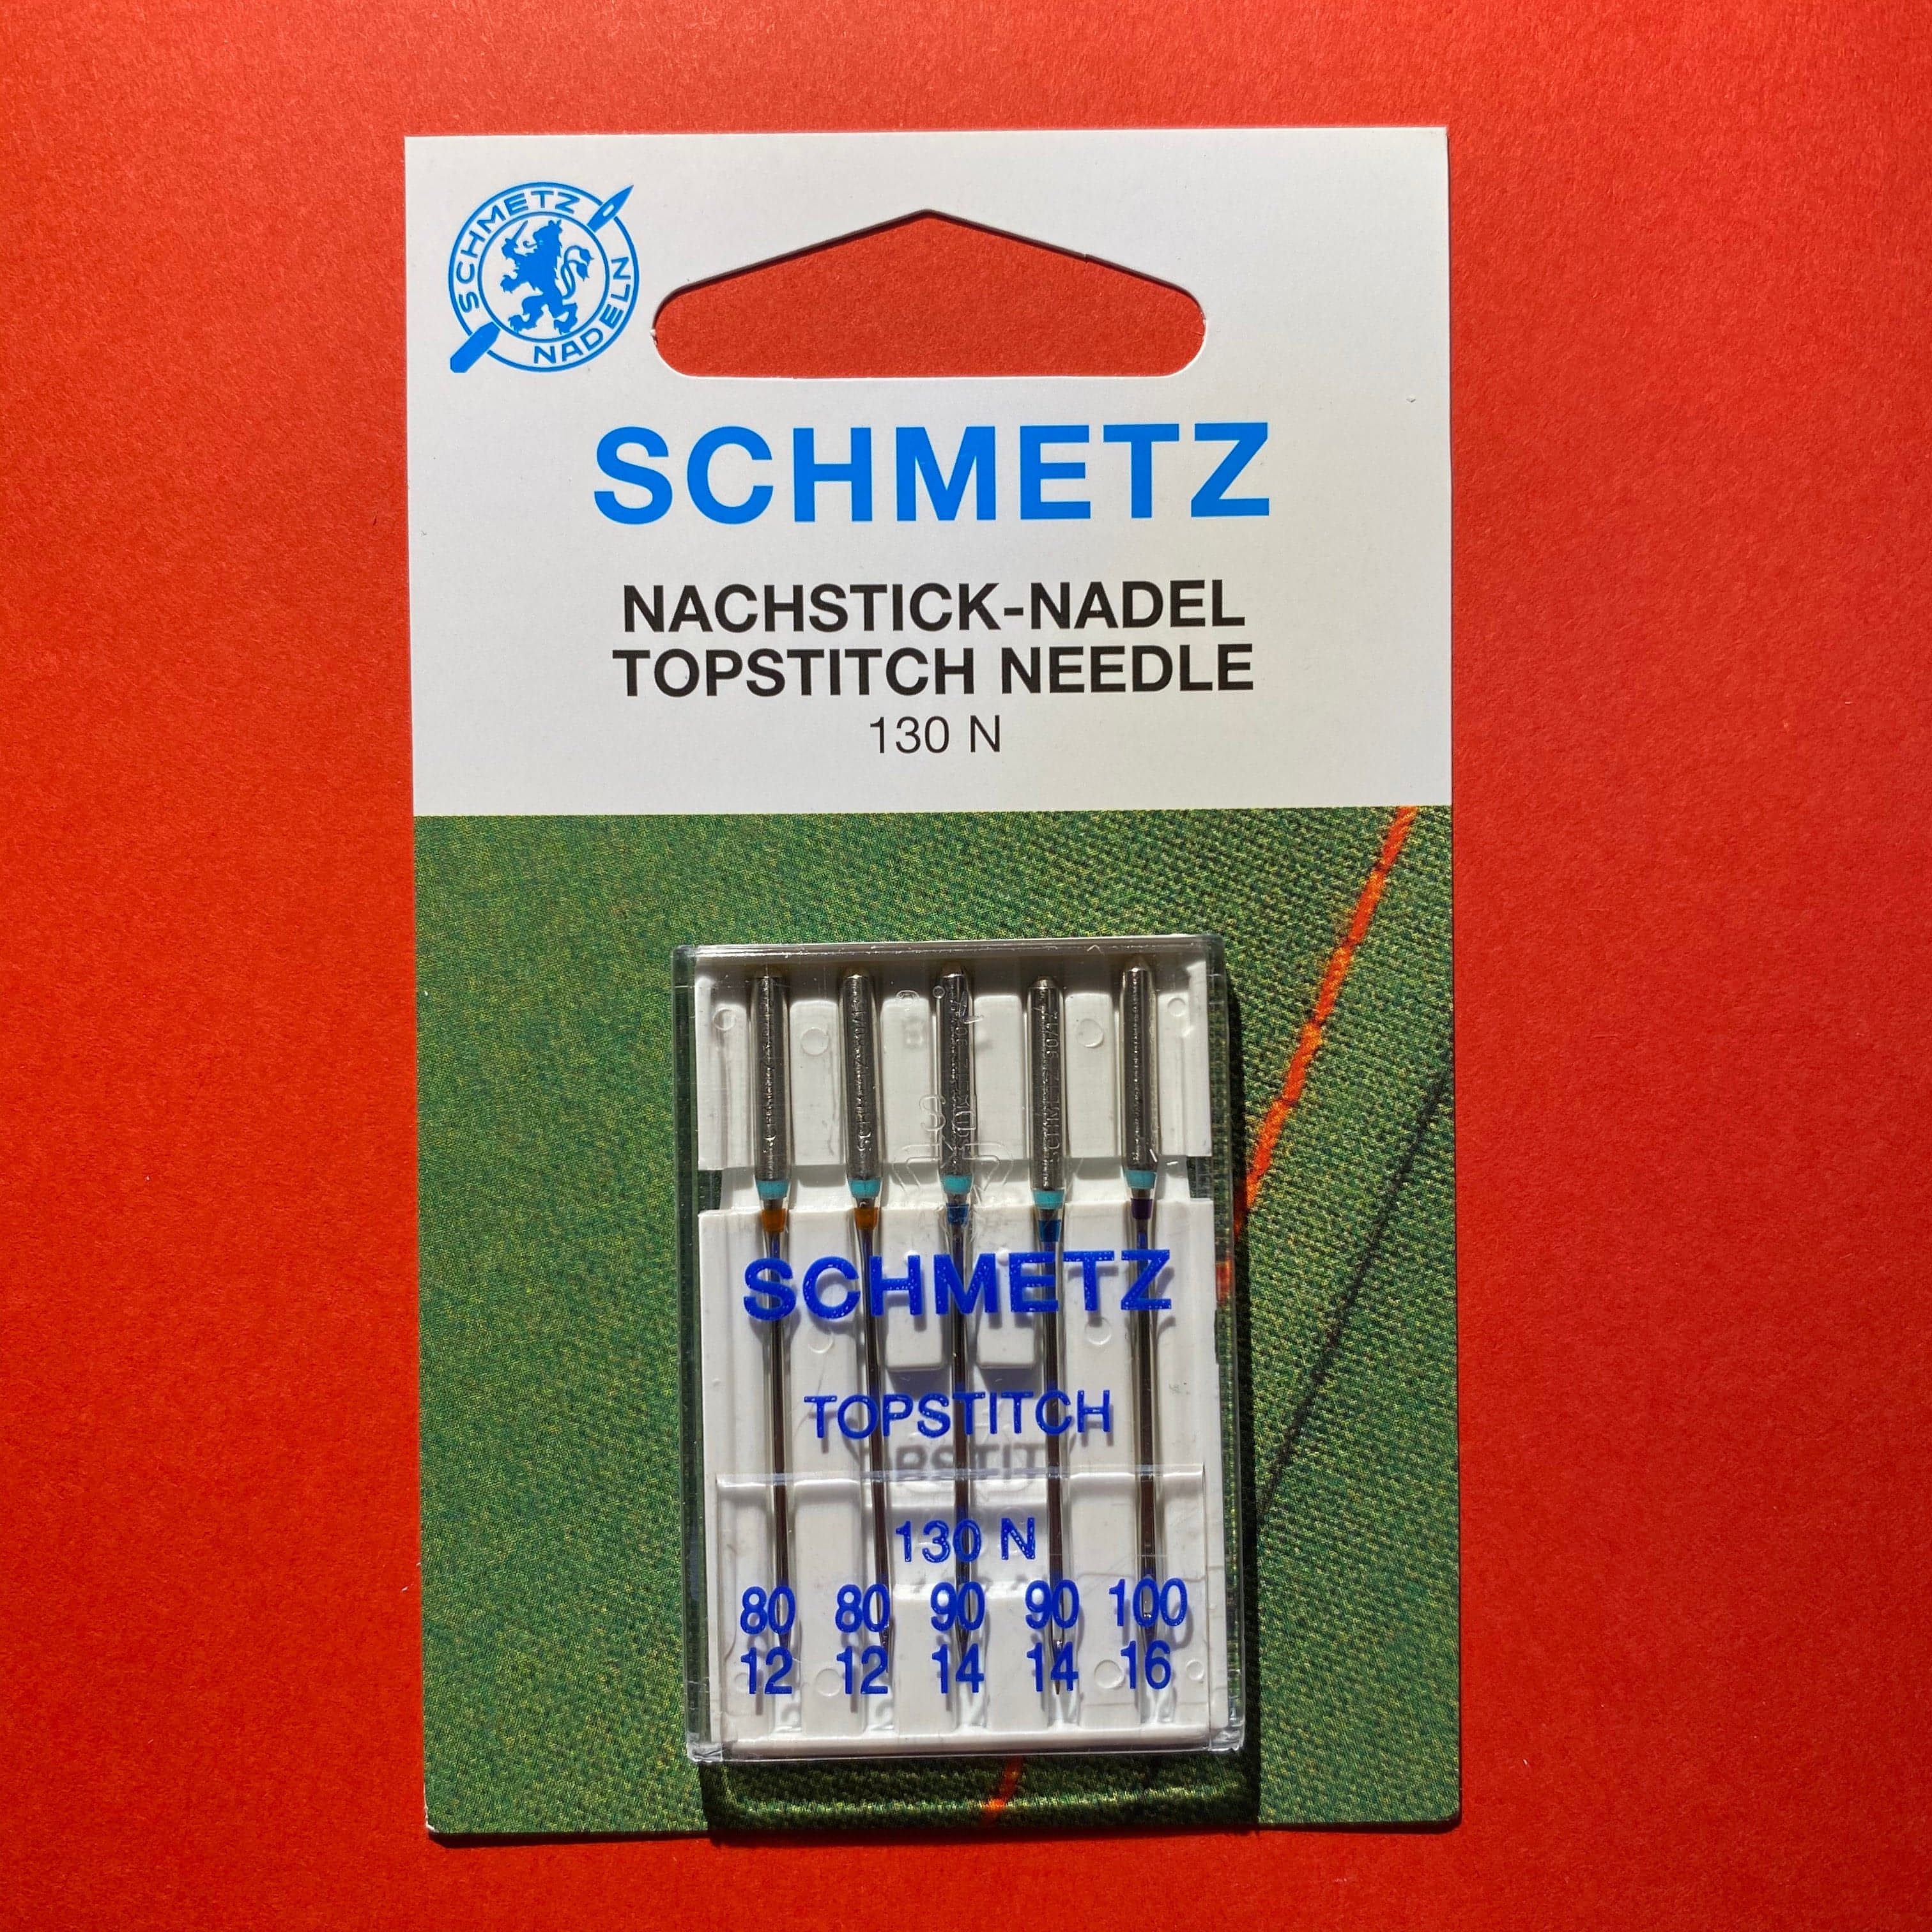 Schmetz Topstitch Needles 130 N Assorted 80 to 100 - 5 pack